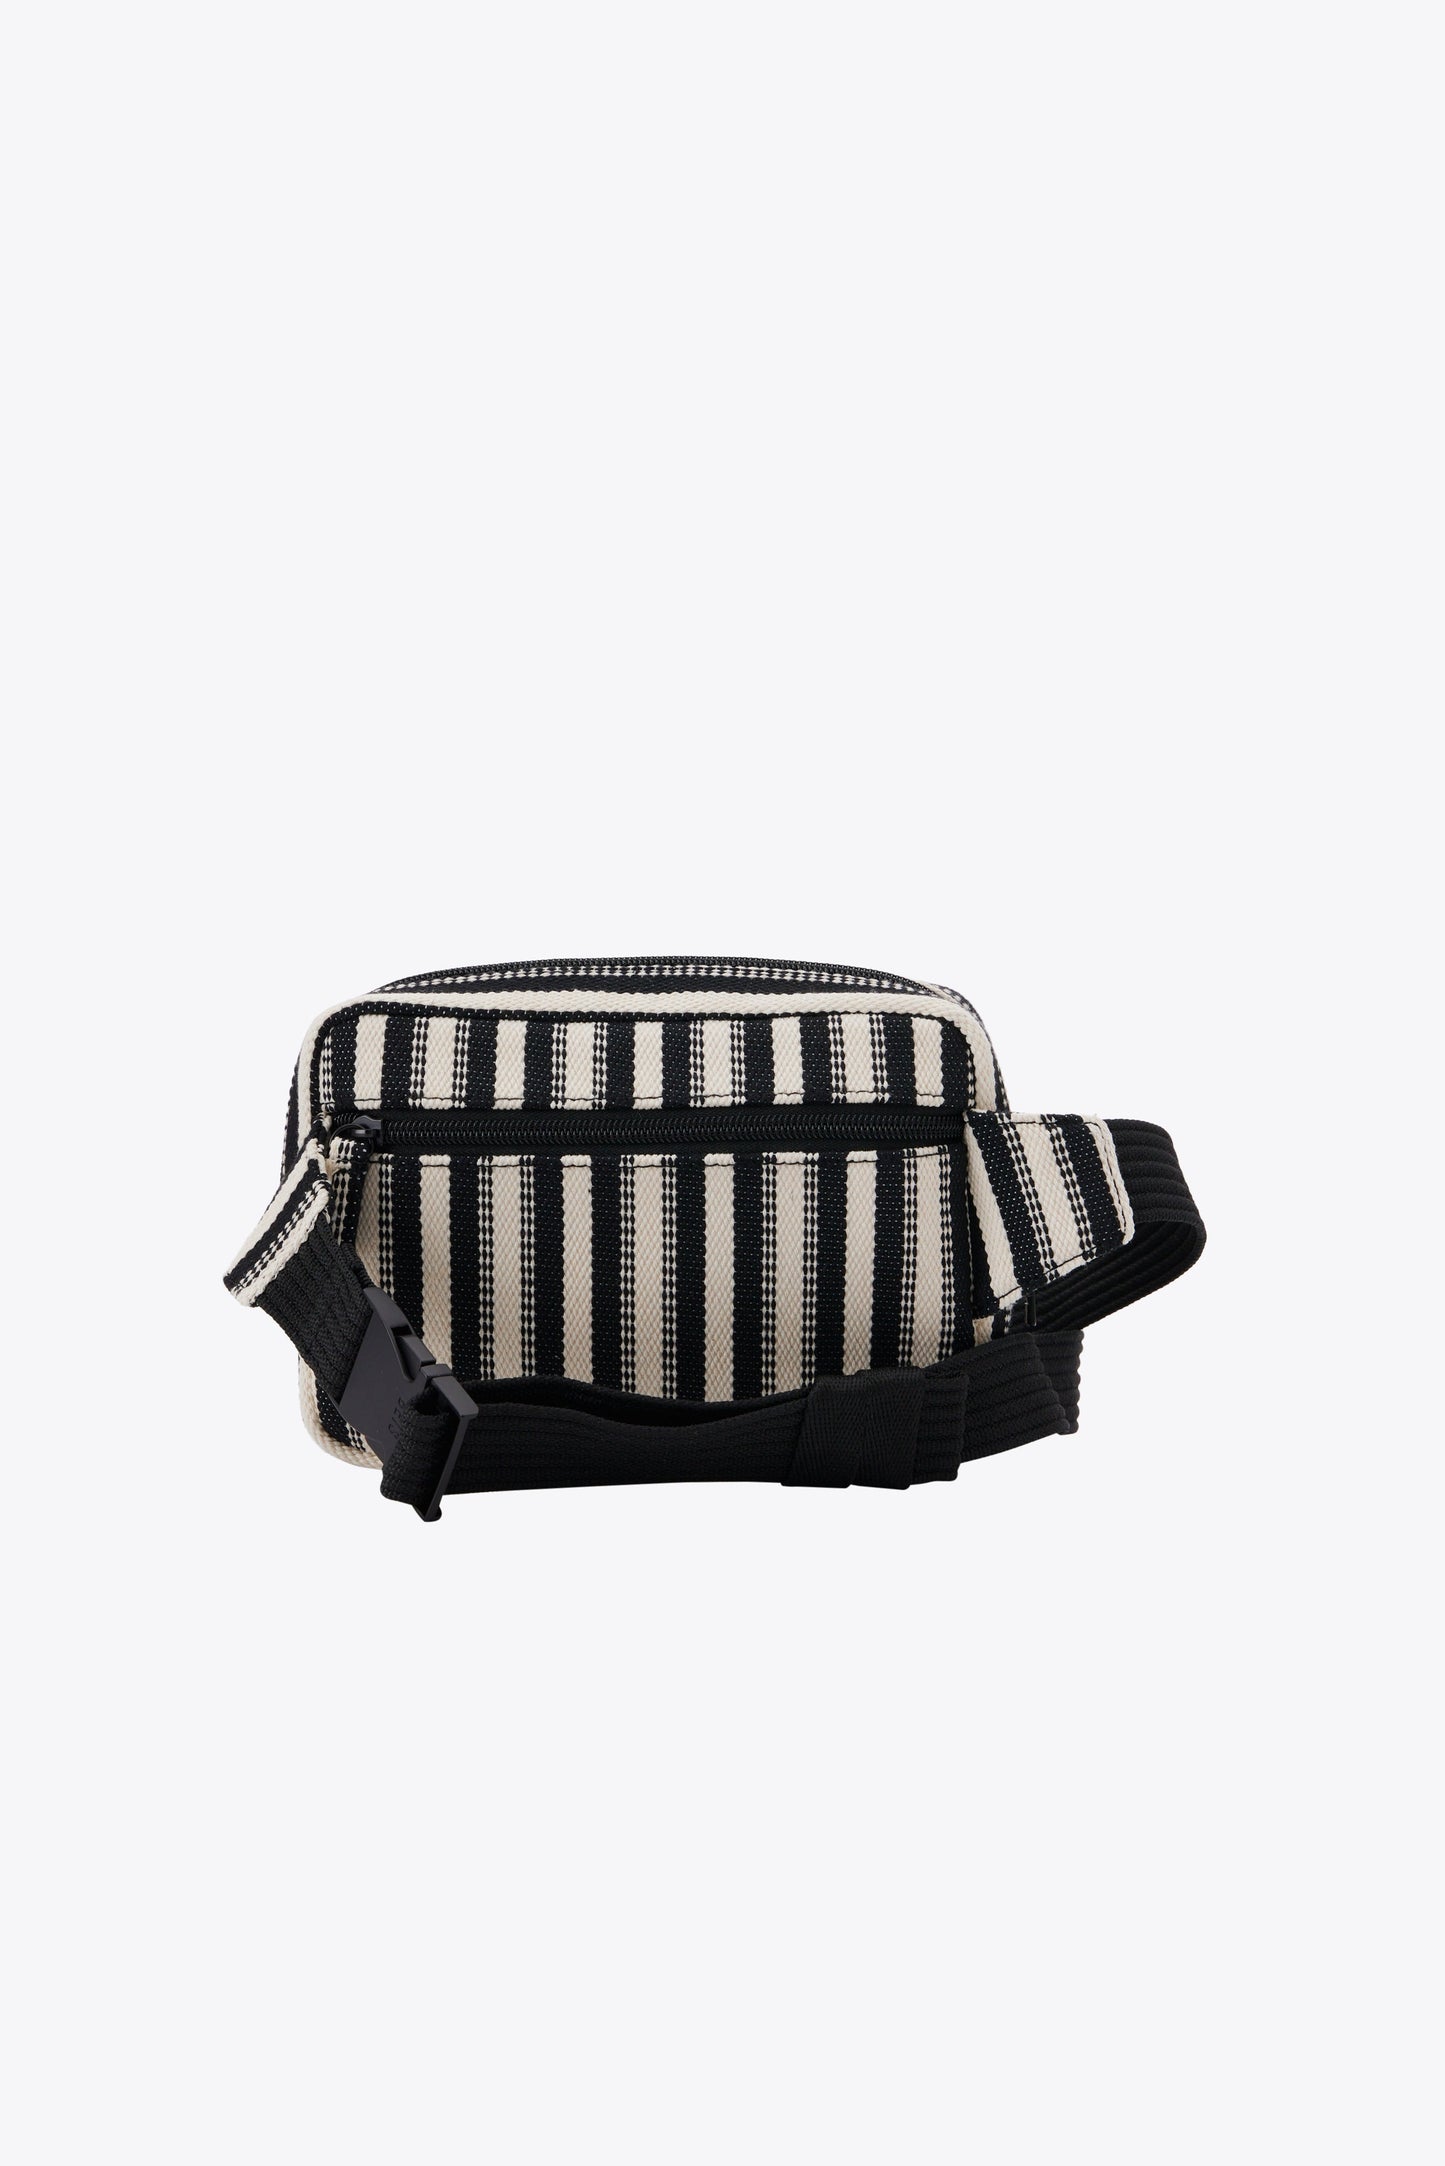 The Belt Bag in Black Stripe